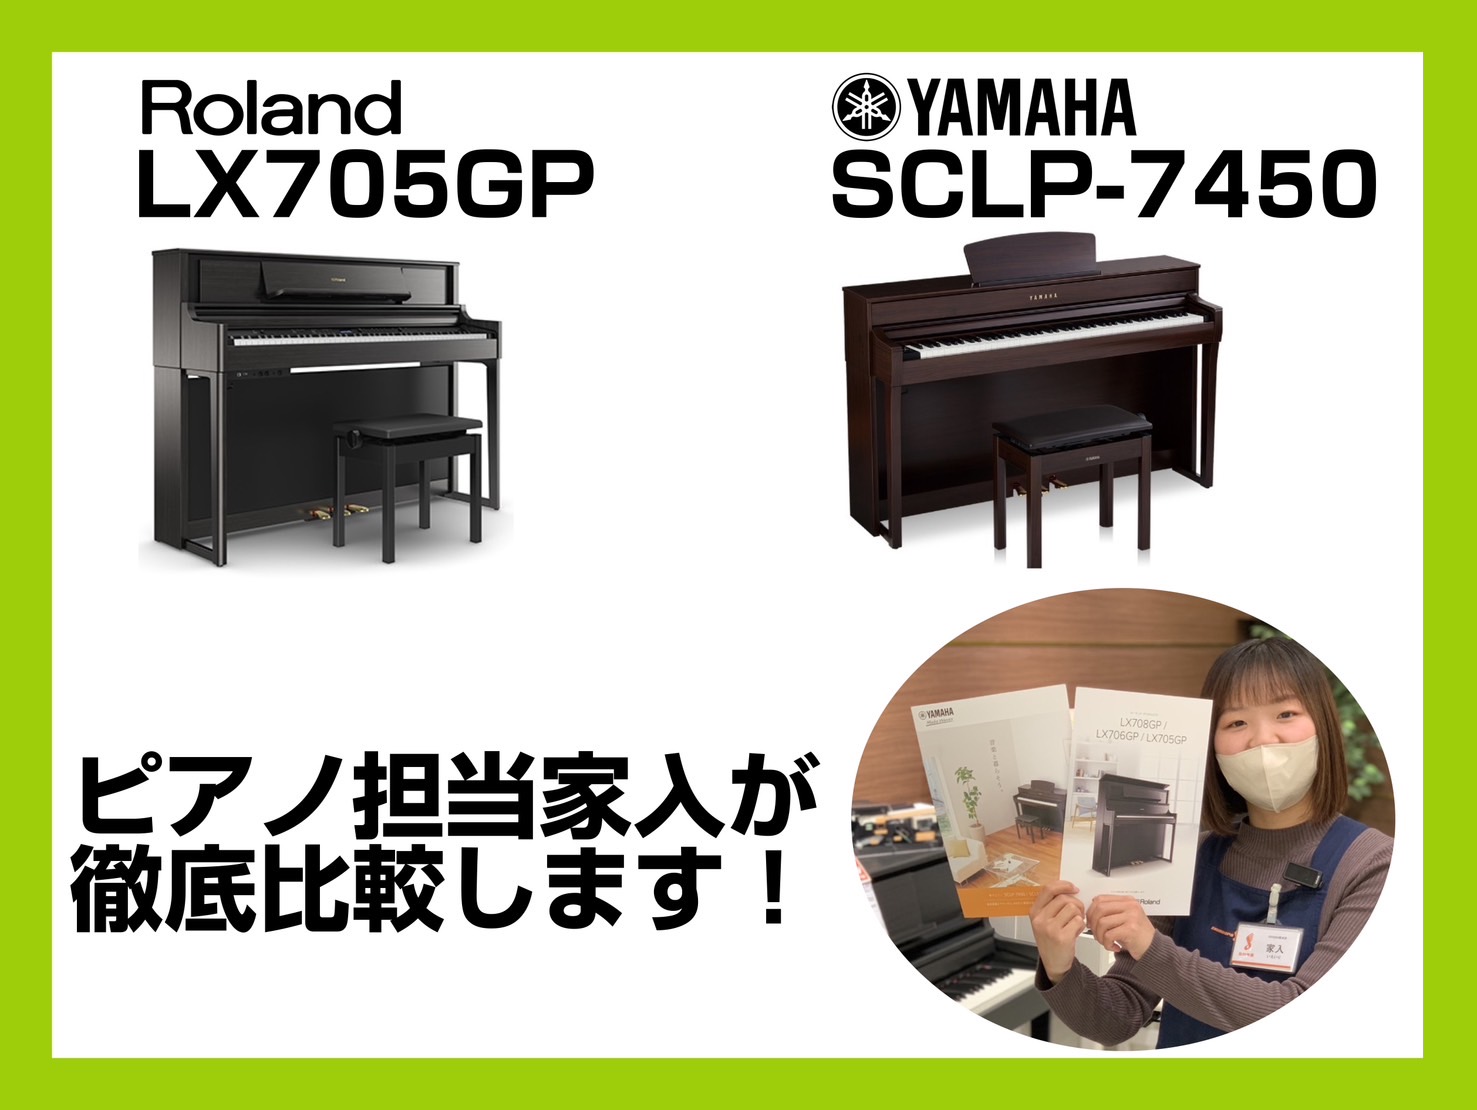 ピアノ担当家入が、Roland/LX705GPとYAMAHA/SCLP-7450を徹底比較！ 本日は、幅広い層に大人気の電子ピアノRoland/LX705GPとYAMAHA/SCLP-7450の違いについて解説いたします♪店頭でピアノのご案内をしていると、この2台で悩まれる方がとても多いように感じま […]